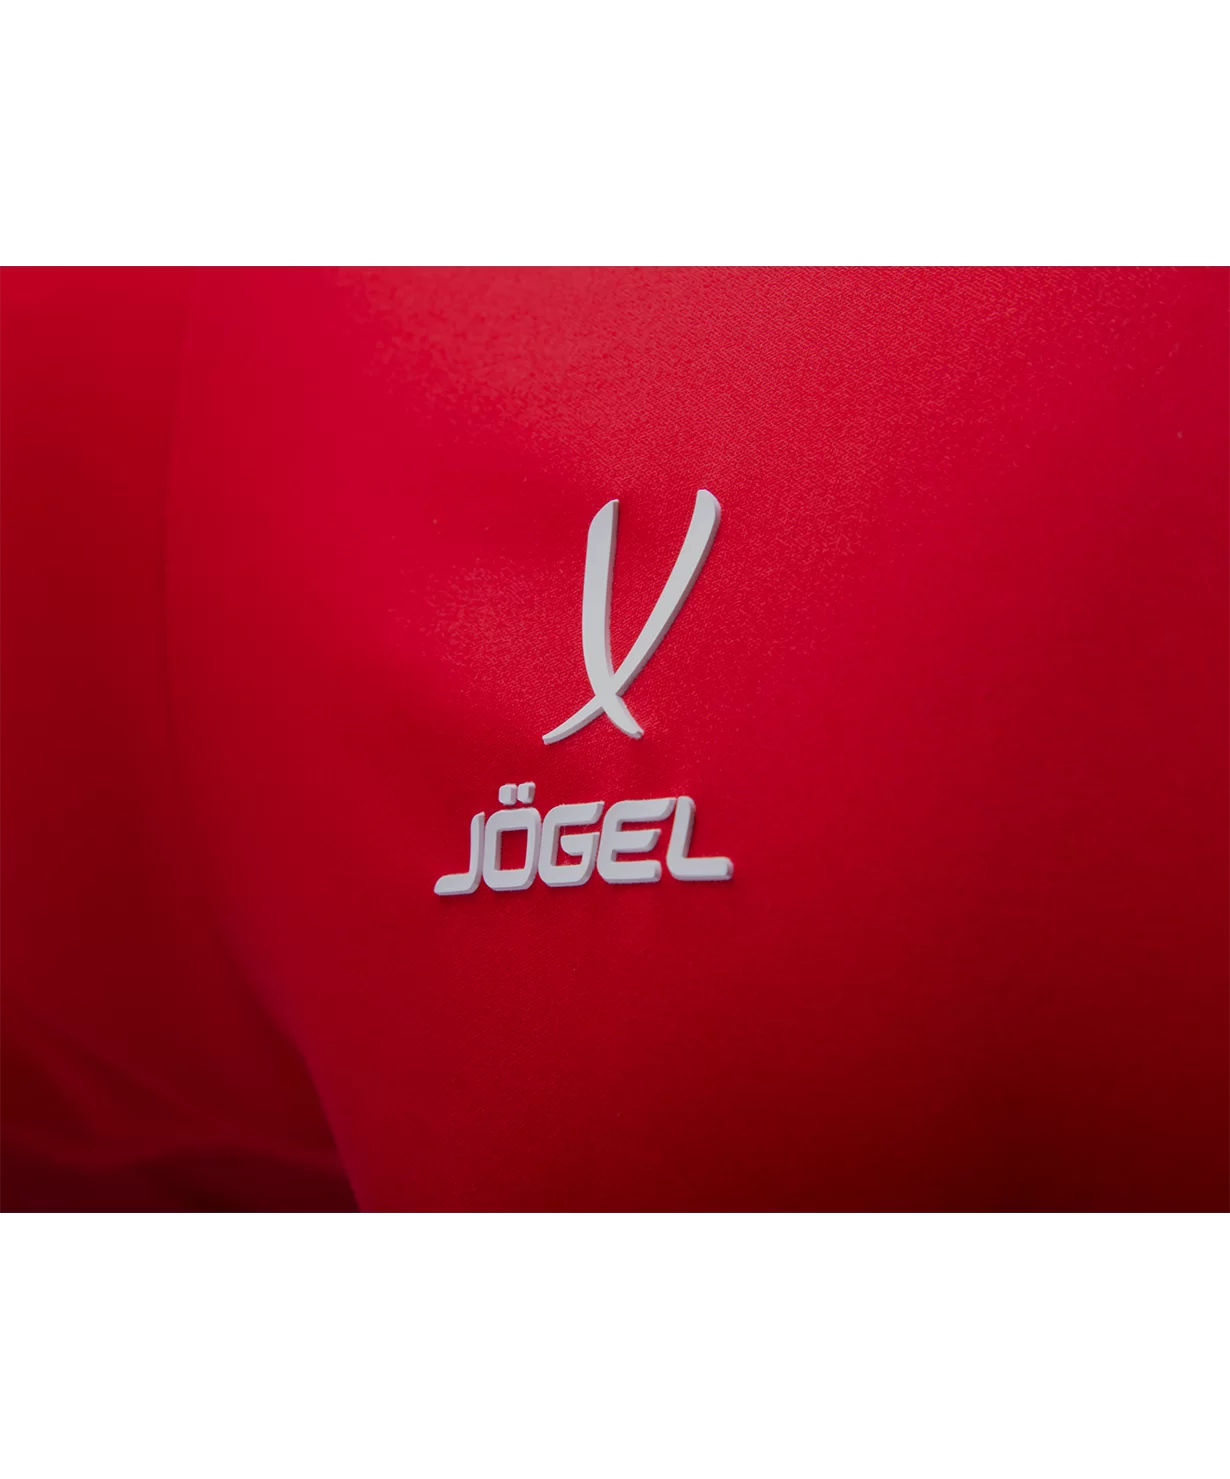 Реальное фото Шорты игровые DIVISION PerFormDRY Union Shorts, красный/темно-красный/белый Jögel от магазина Спортев